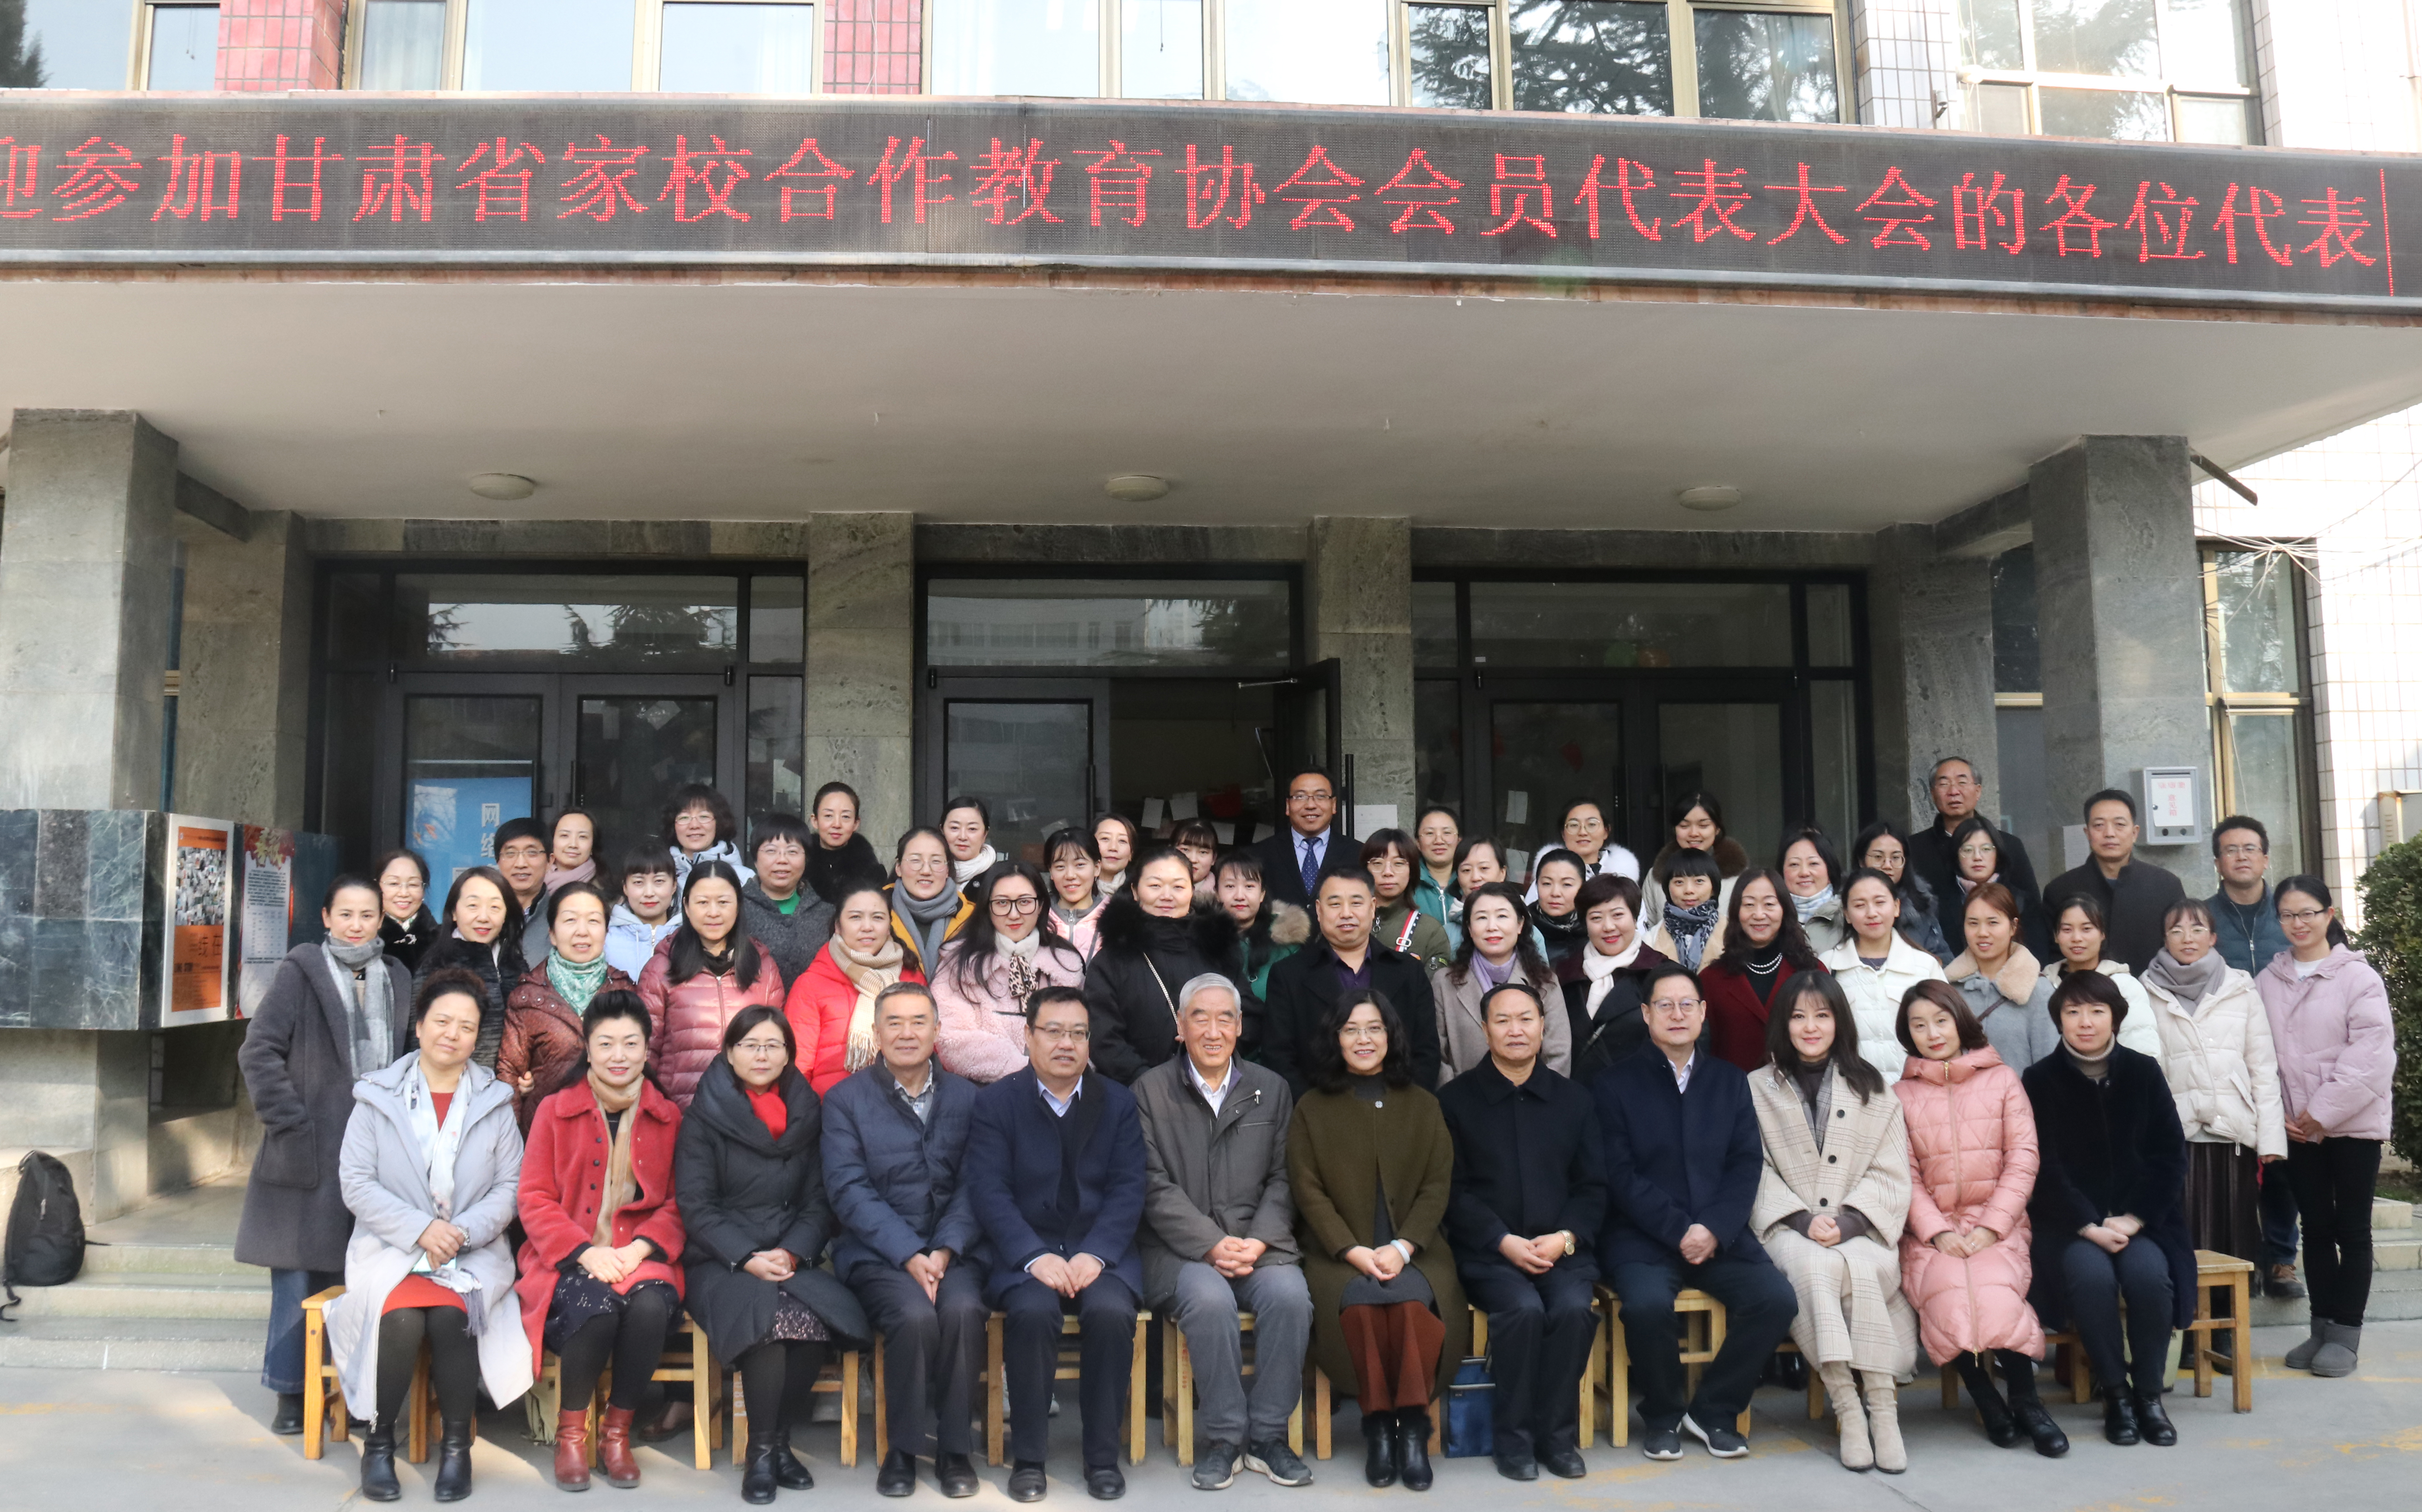 甘肃省家校合作教育协会会员代表大会在我校举行